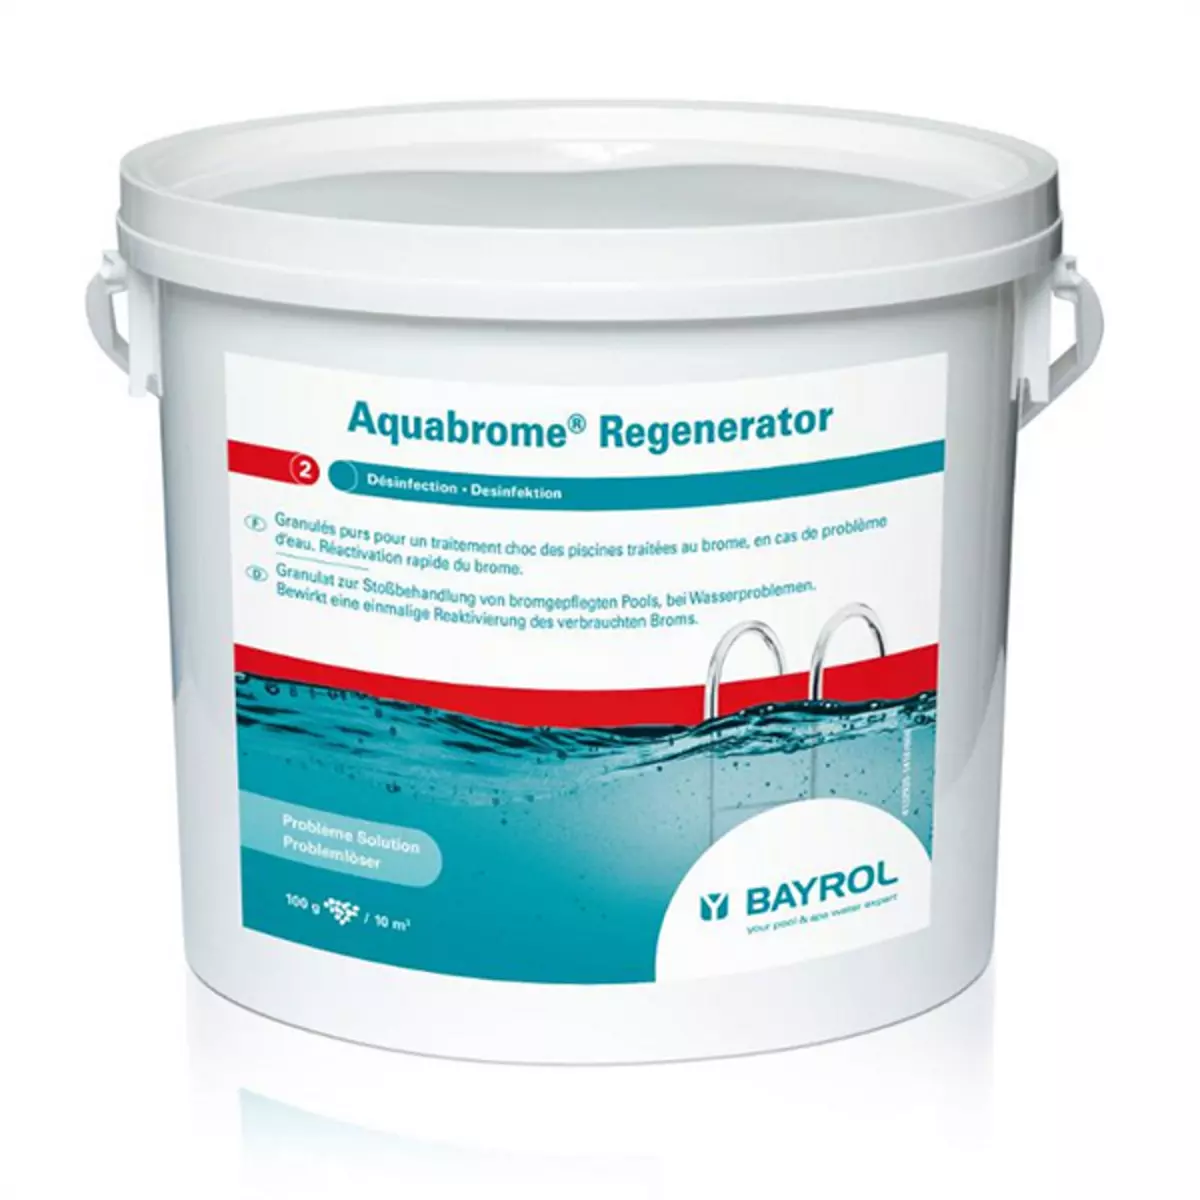 Bayrol Régénérateur de brome consommé 5kg - aquabrome regenerator